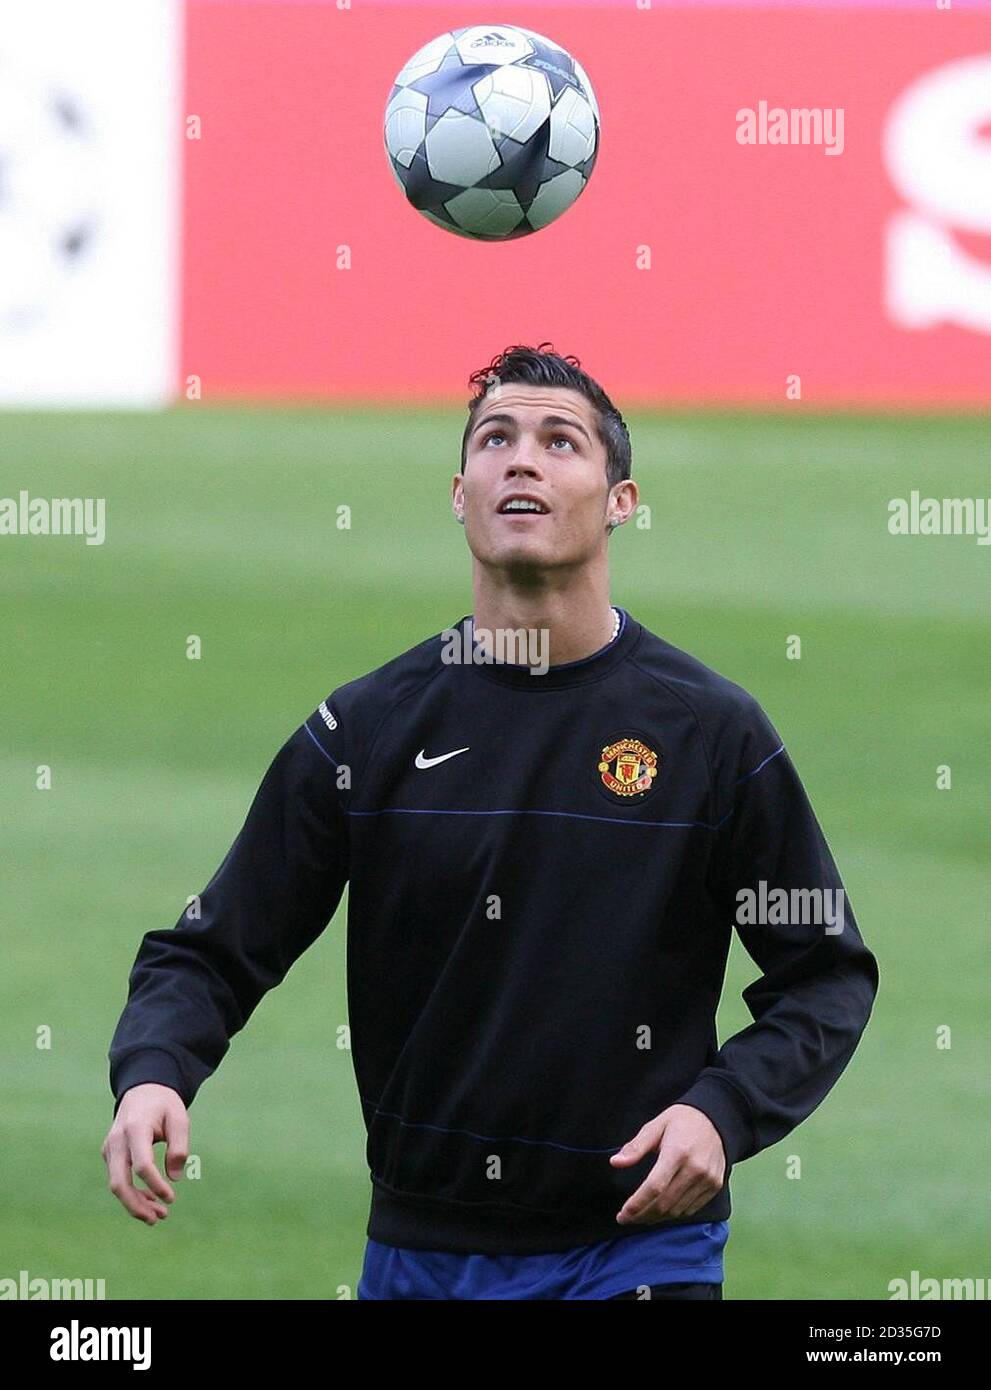 Cristiano Ronaldo de Manchester United jongle avec un ballon lors d'une  séance d'entraînement au stade Dragao, Porto, Portugal Photo Stock - Alamy